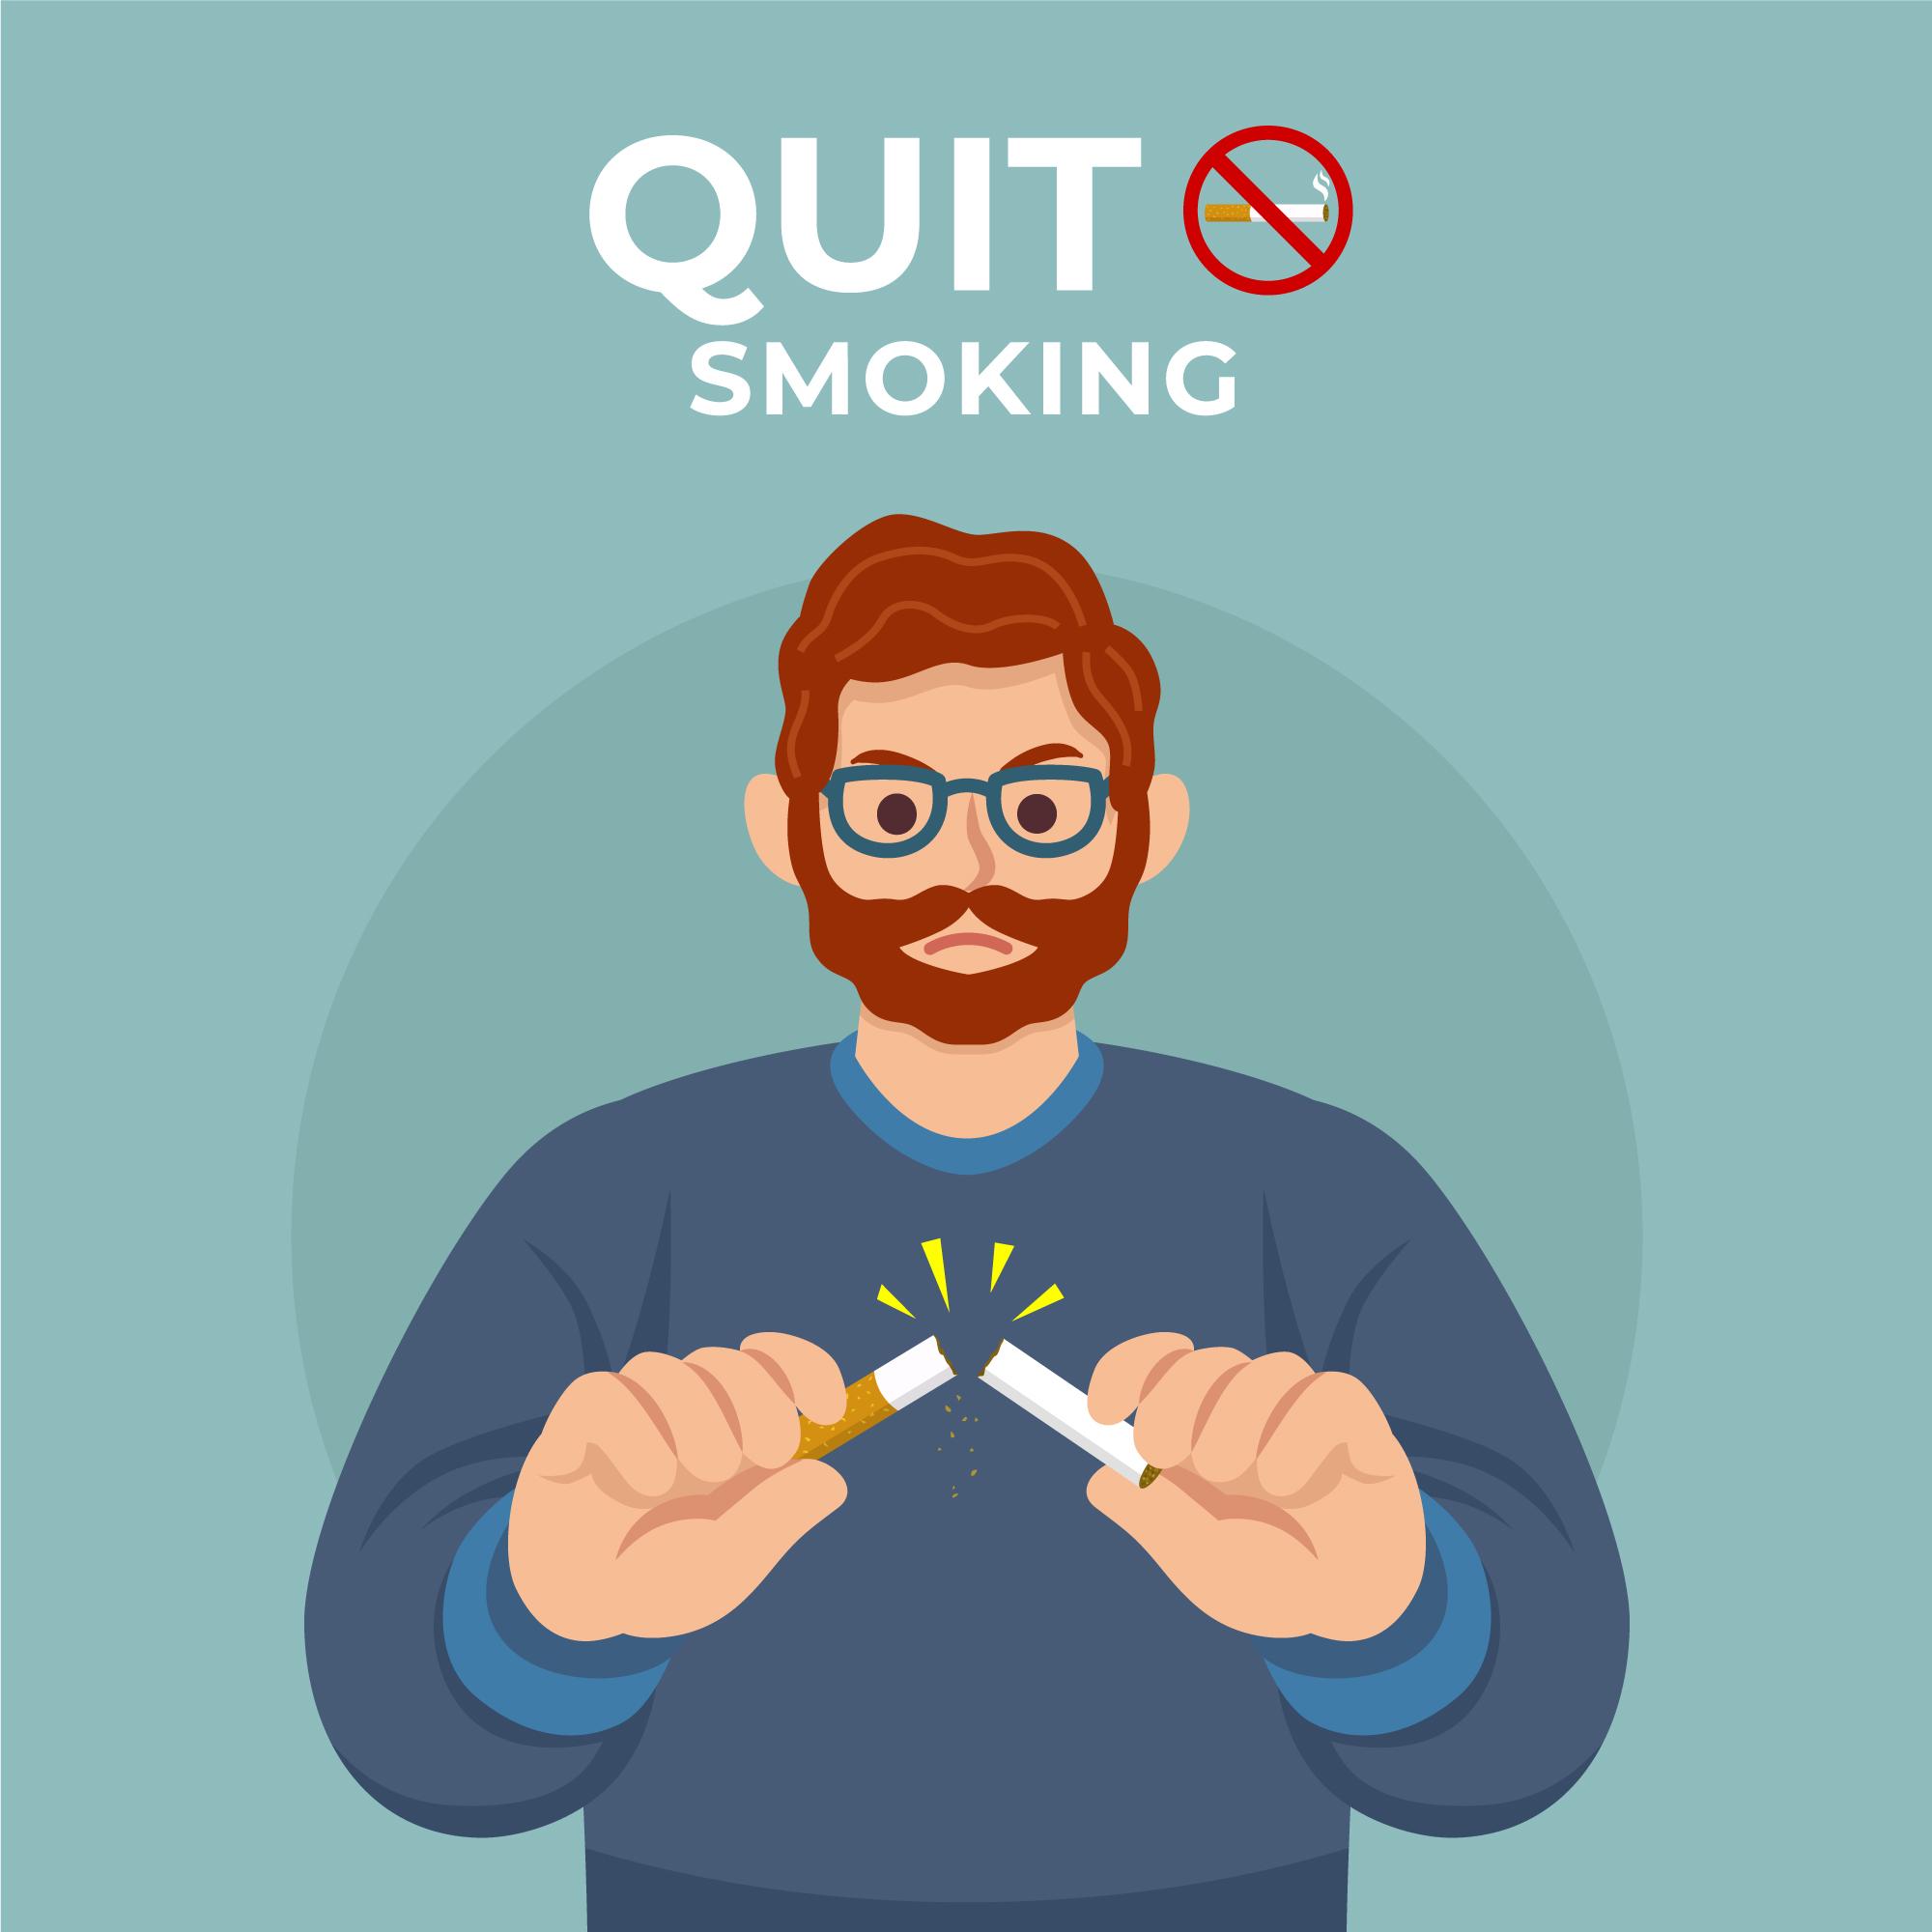 Image of man quitting smoking